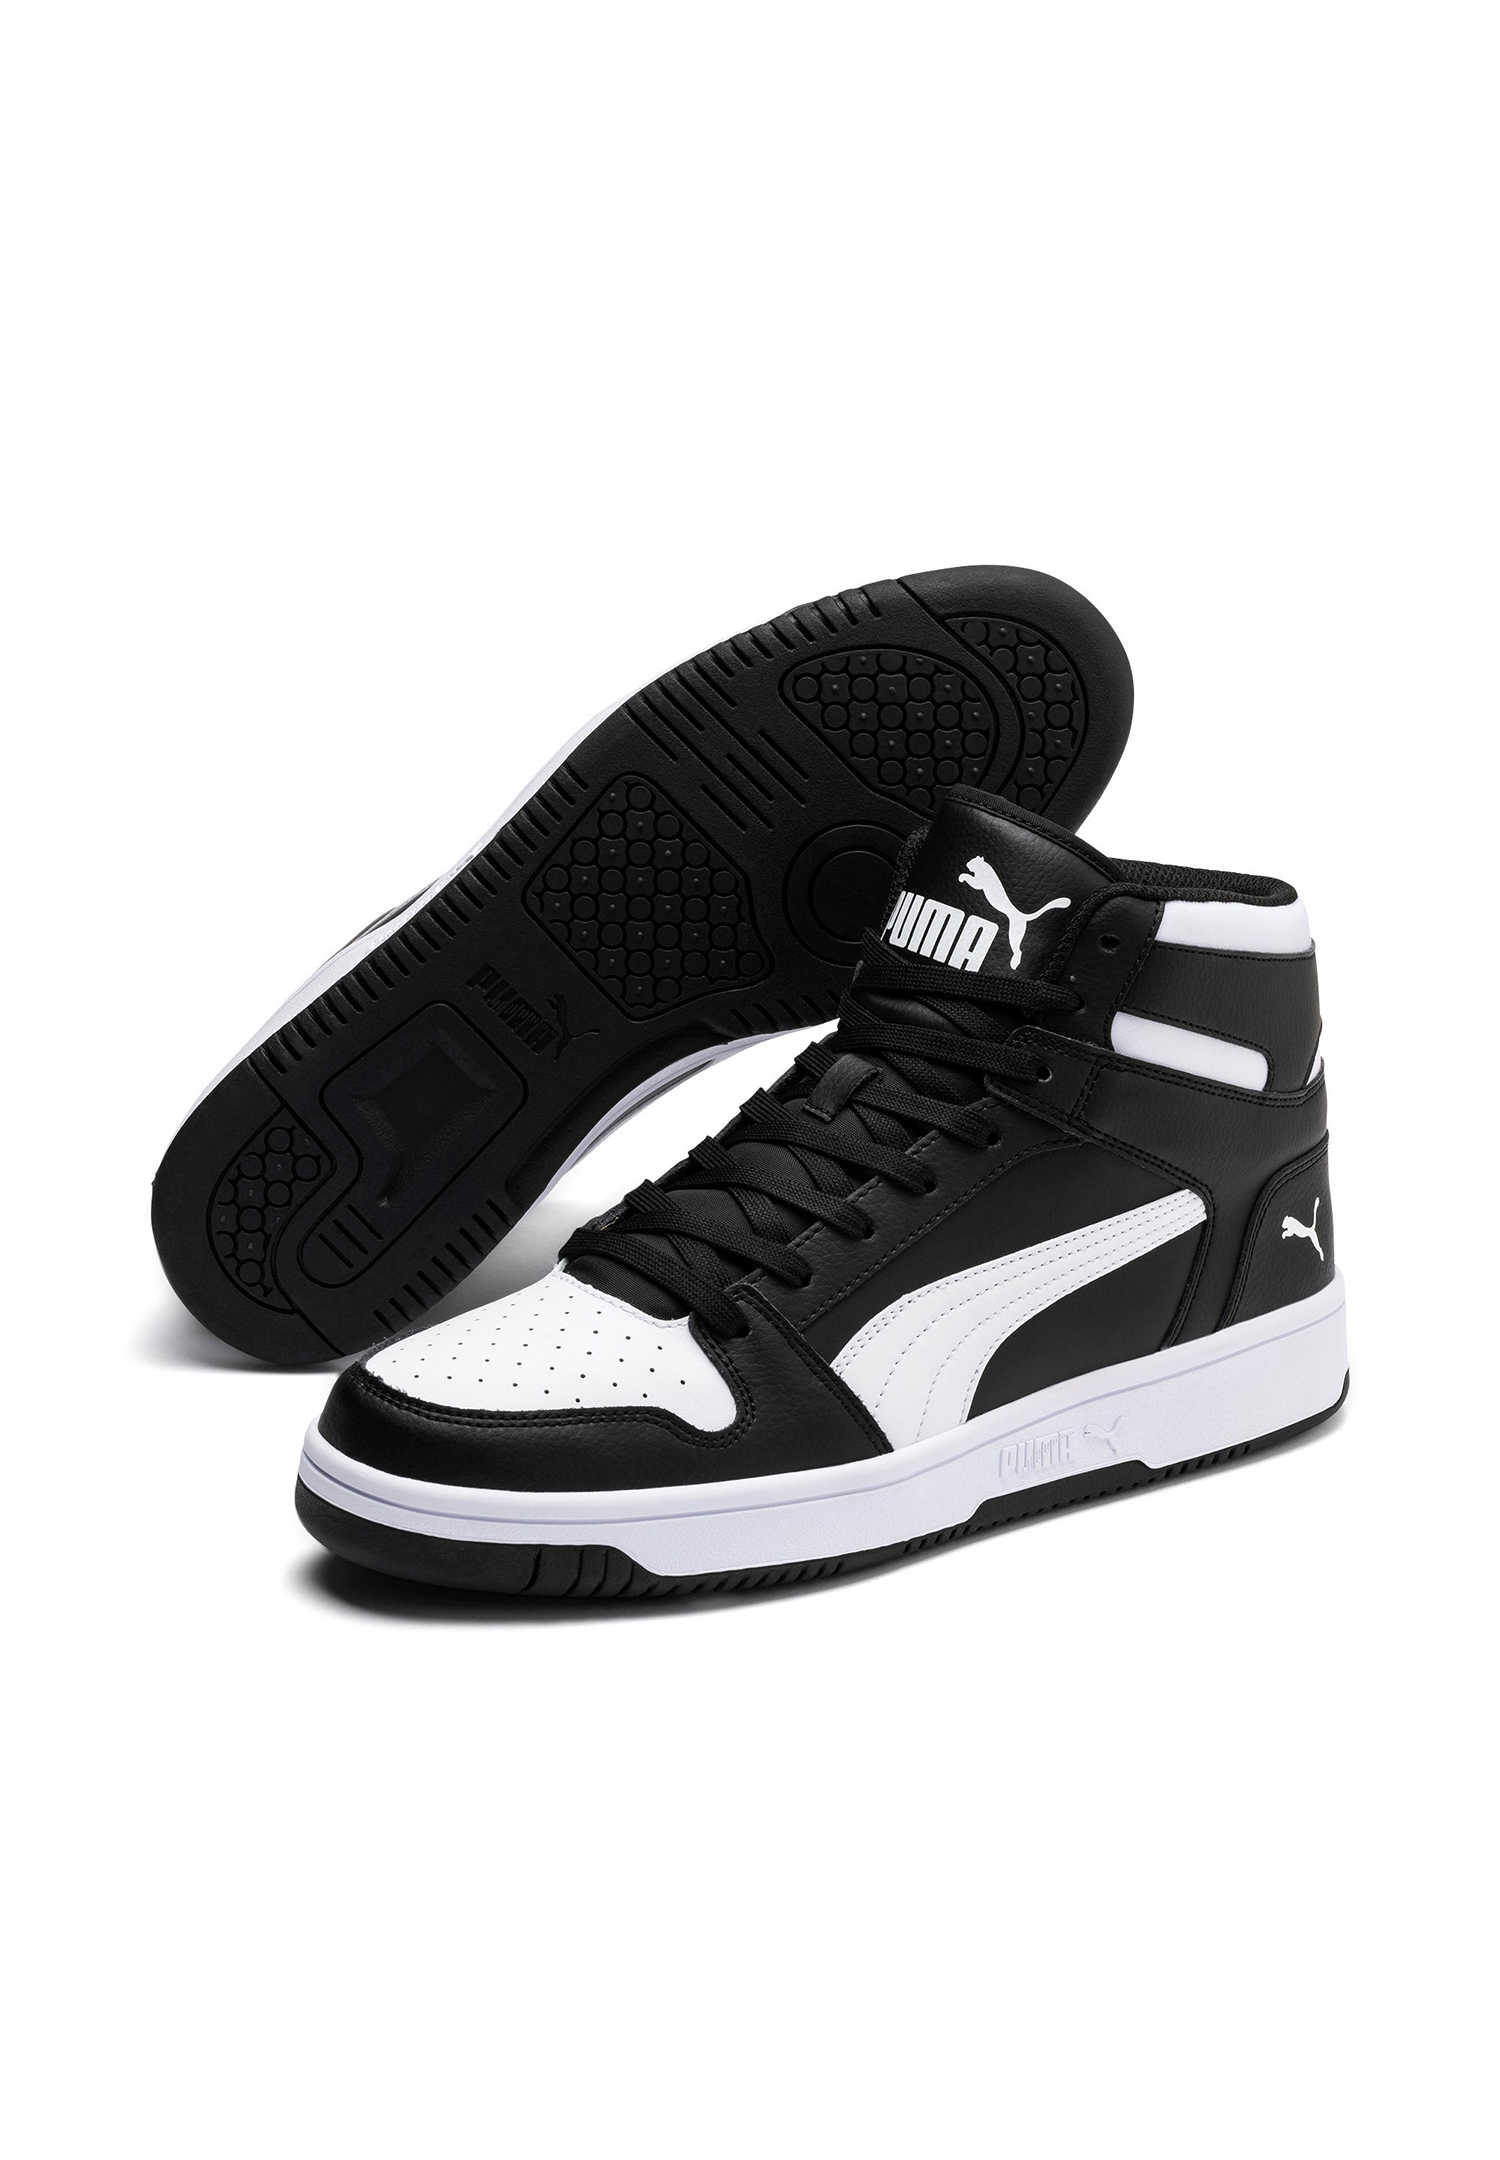 Puma Rebound LayUp SL Hoher Sneaker Stiefel Boots Herren Sneaker 369573